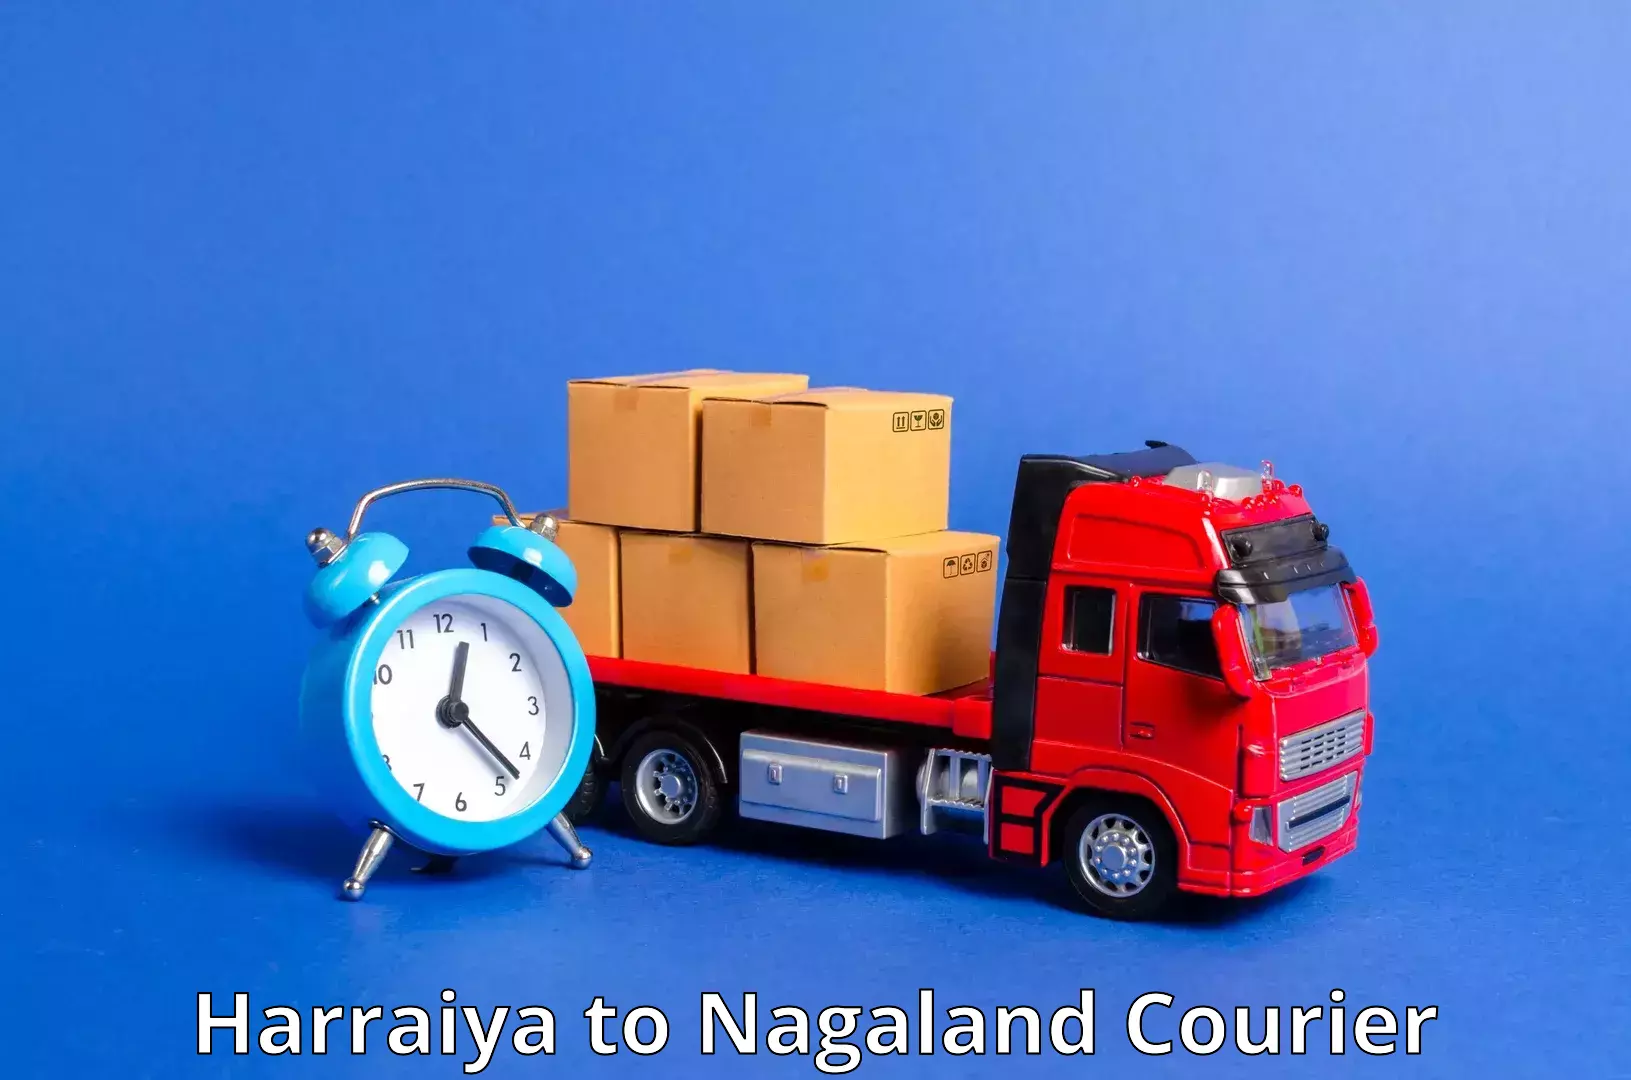 Express mail service Harraiya to NIT Nagaland